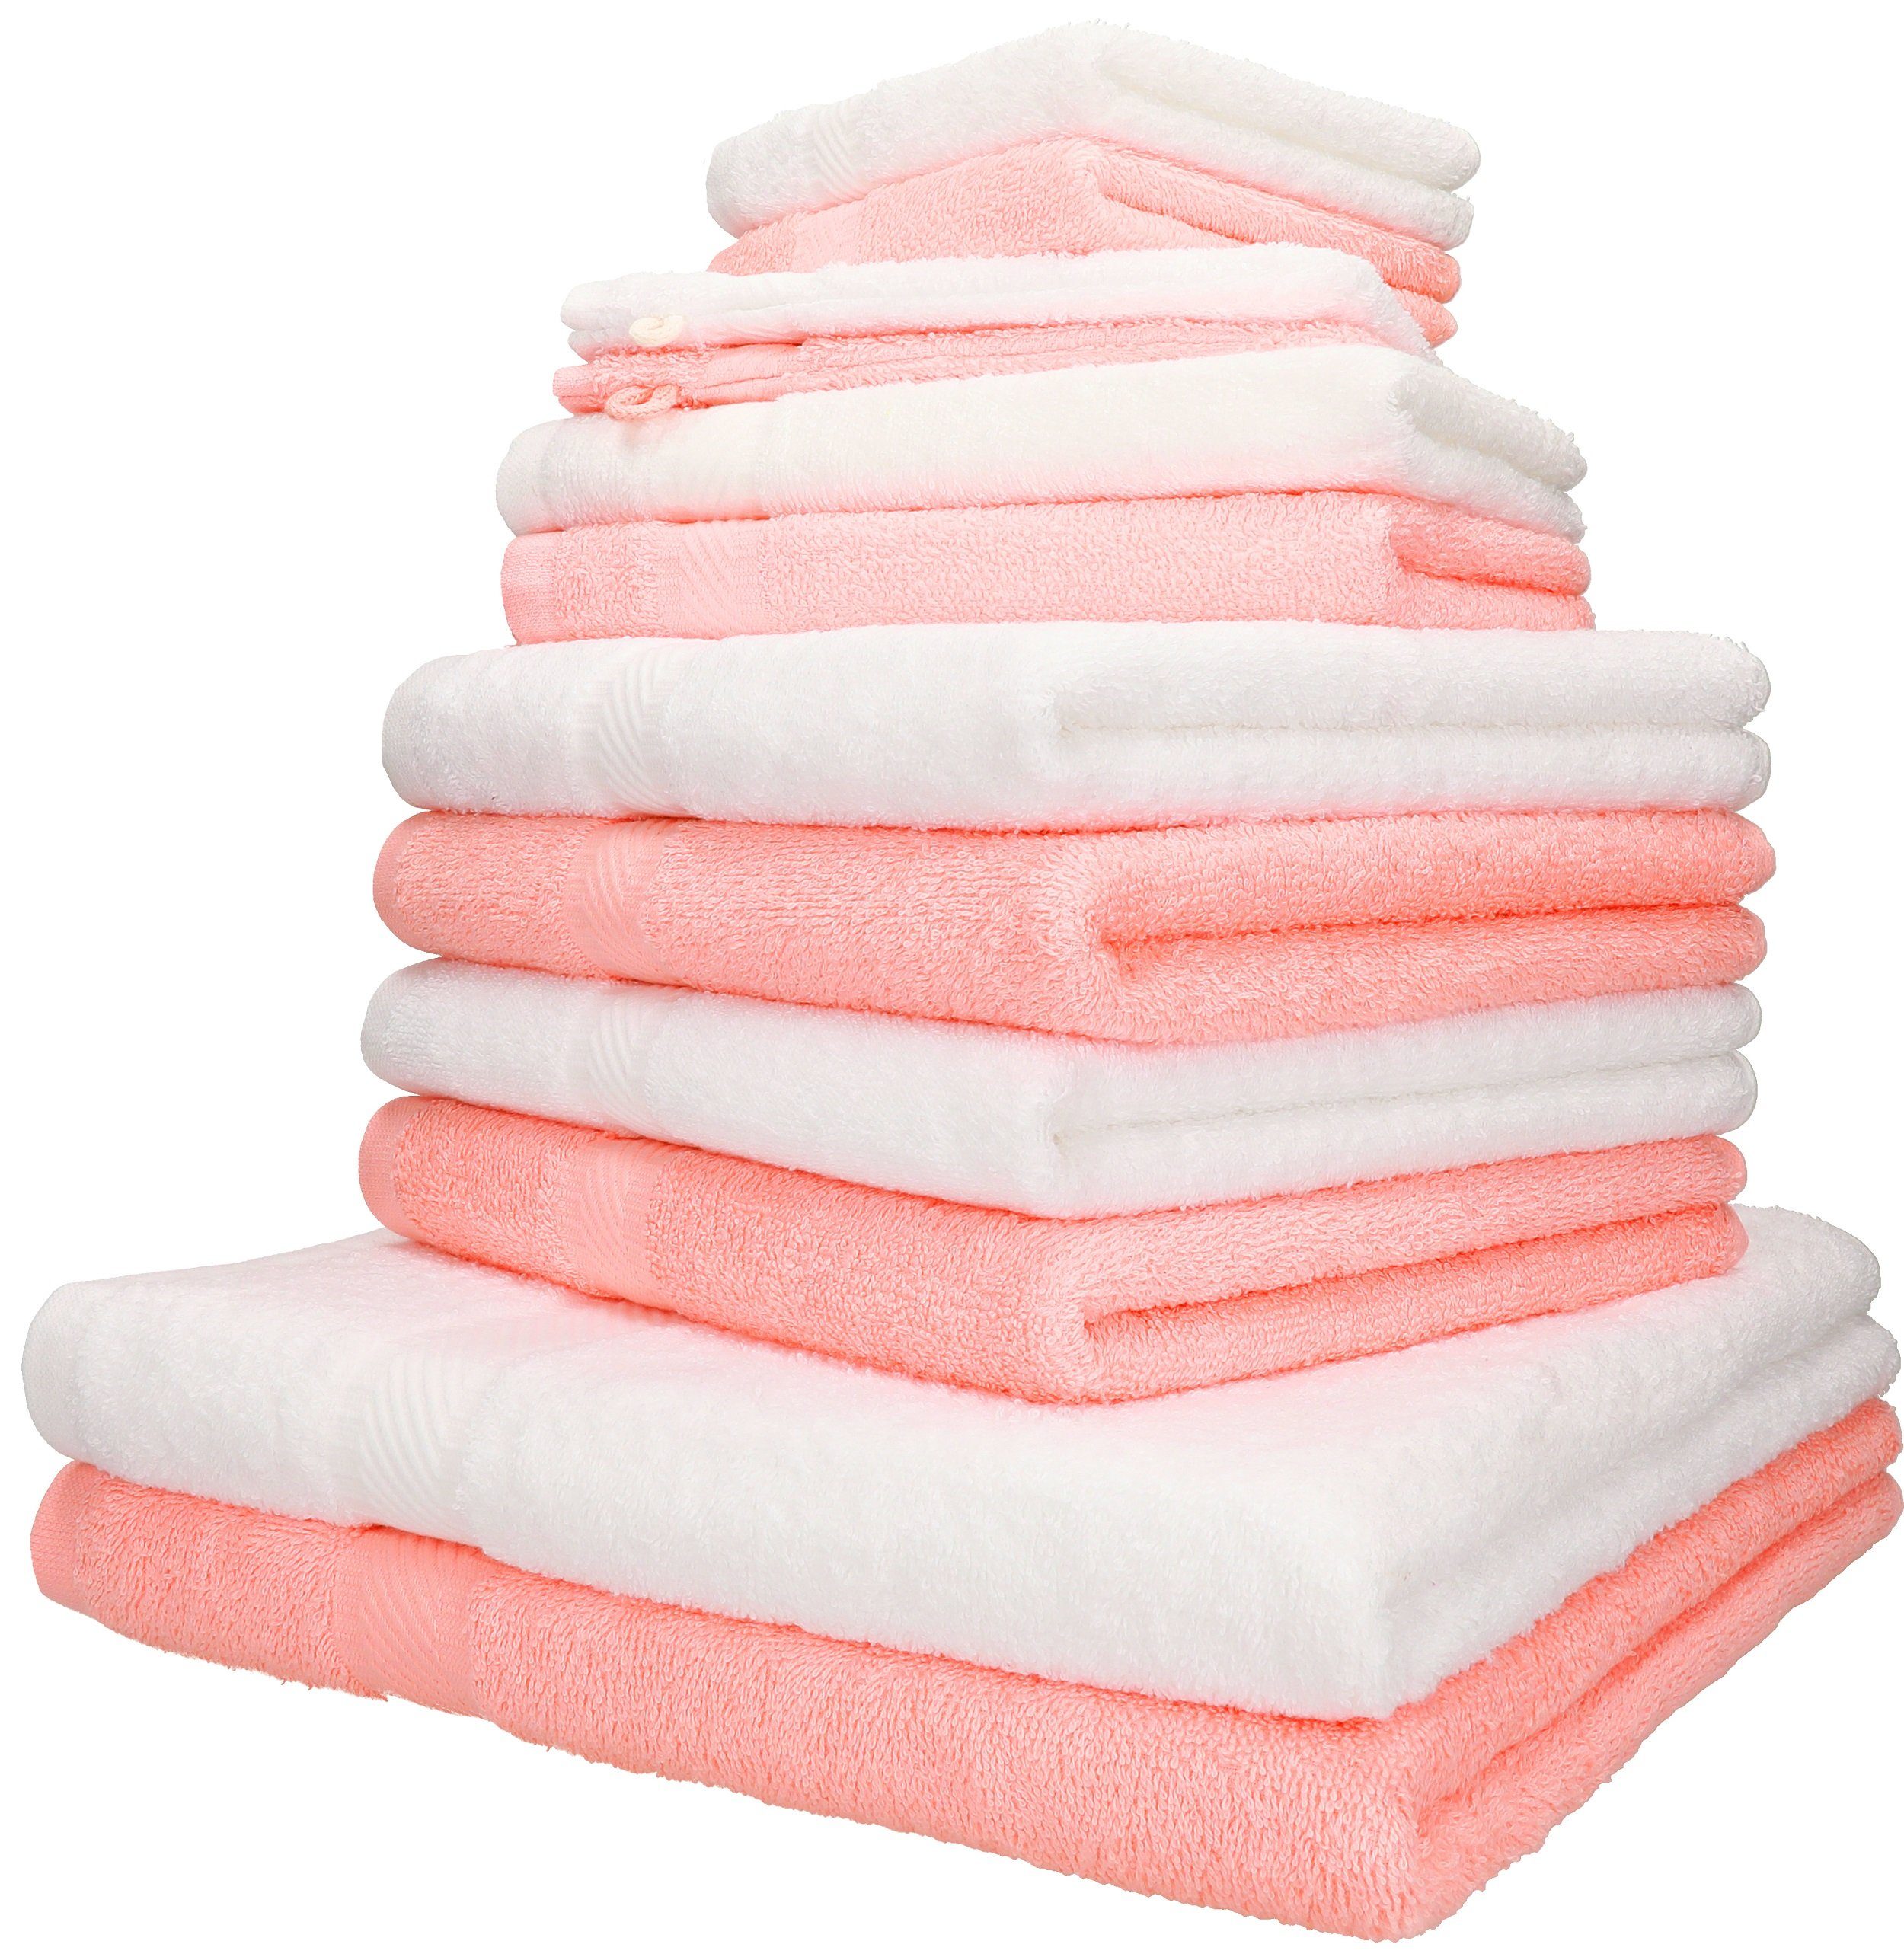 Gästetücher Baumwolle, weiß, apricot Farbe 2 Handtuch-Set Baumwolle 100% 100% 12-TLG. Handtuch Set 2 Palermo 2 Handtücher Liegetücher Seiftücher 2 (12-tlg) und 4 Betz Waschhandschuhe